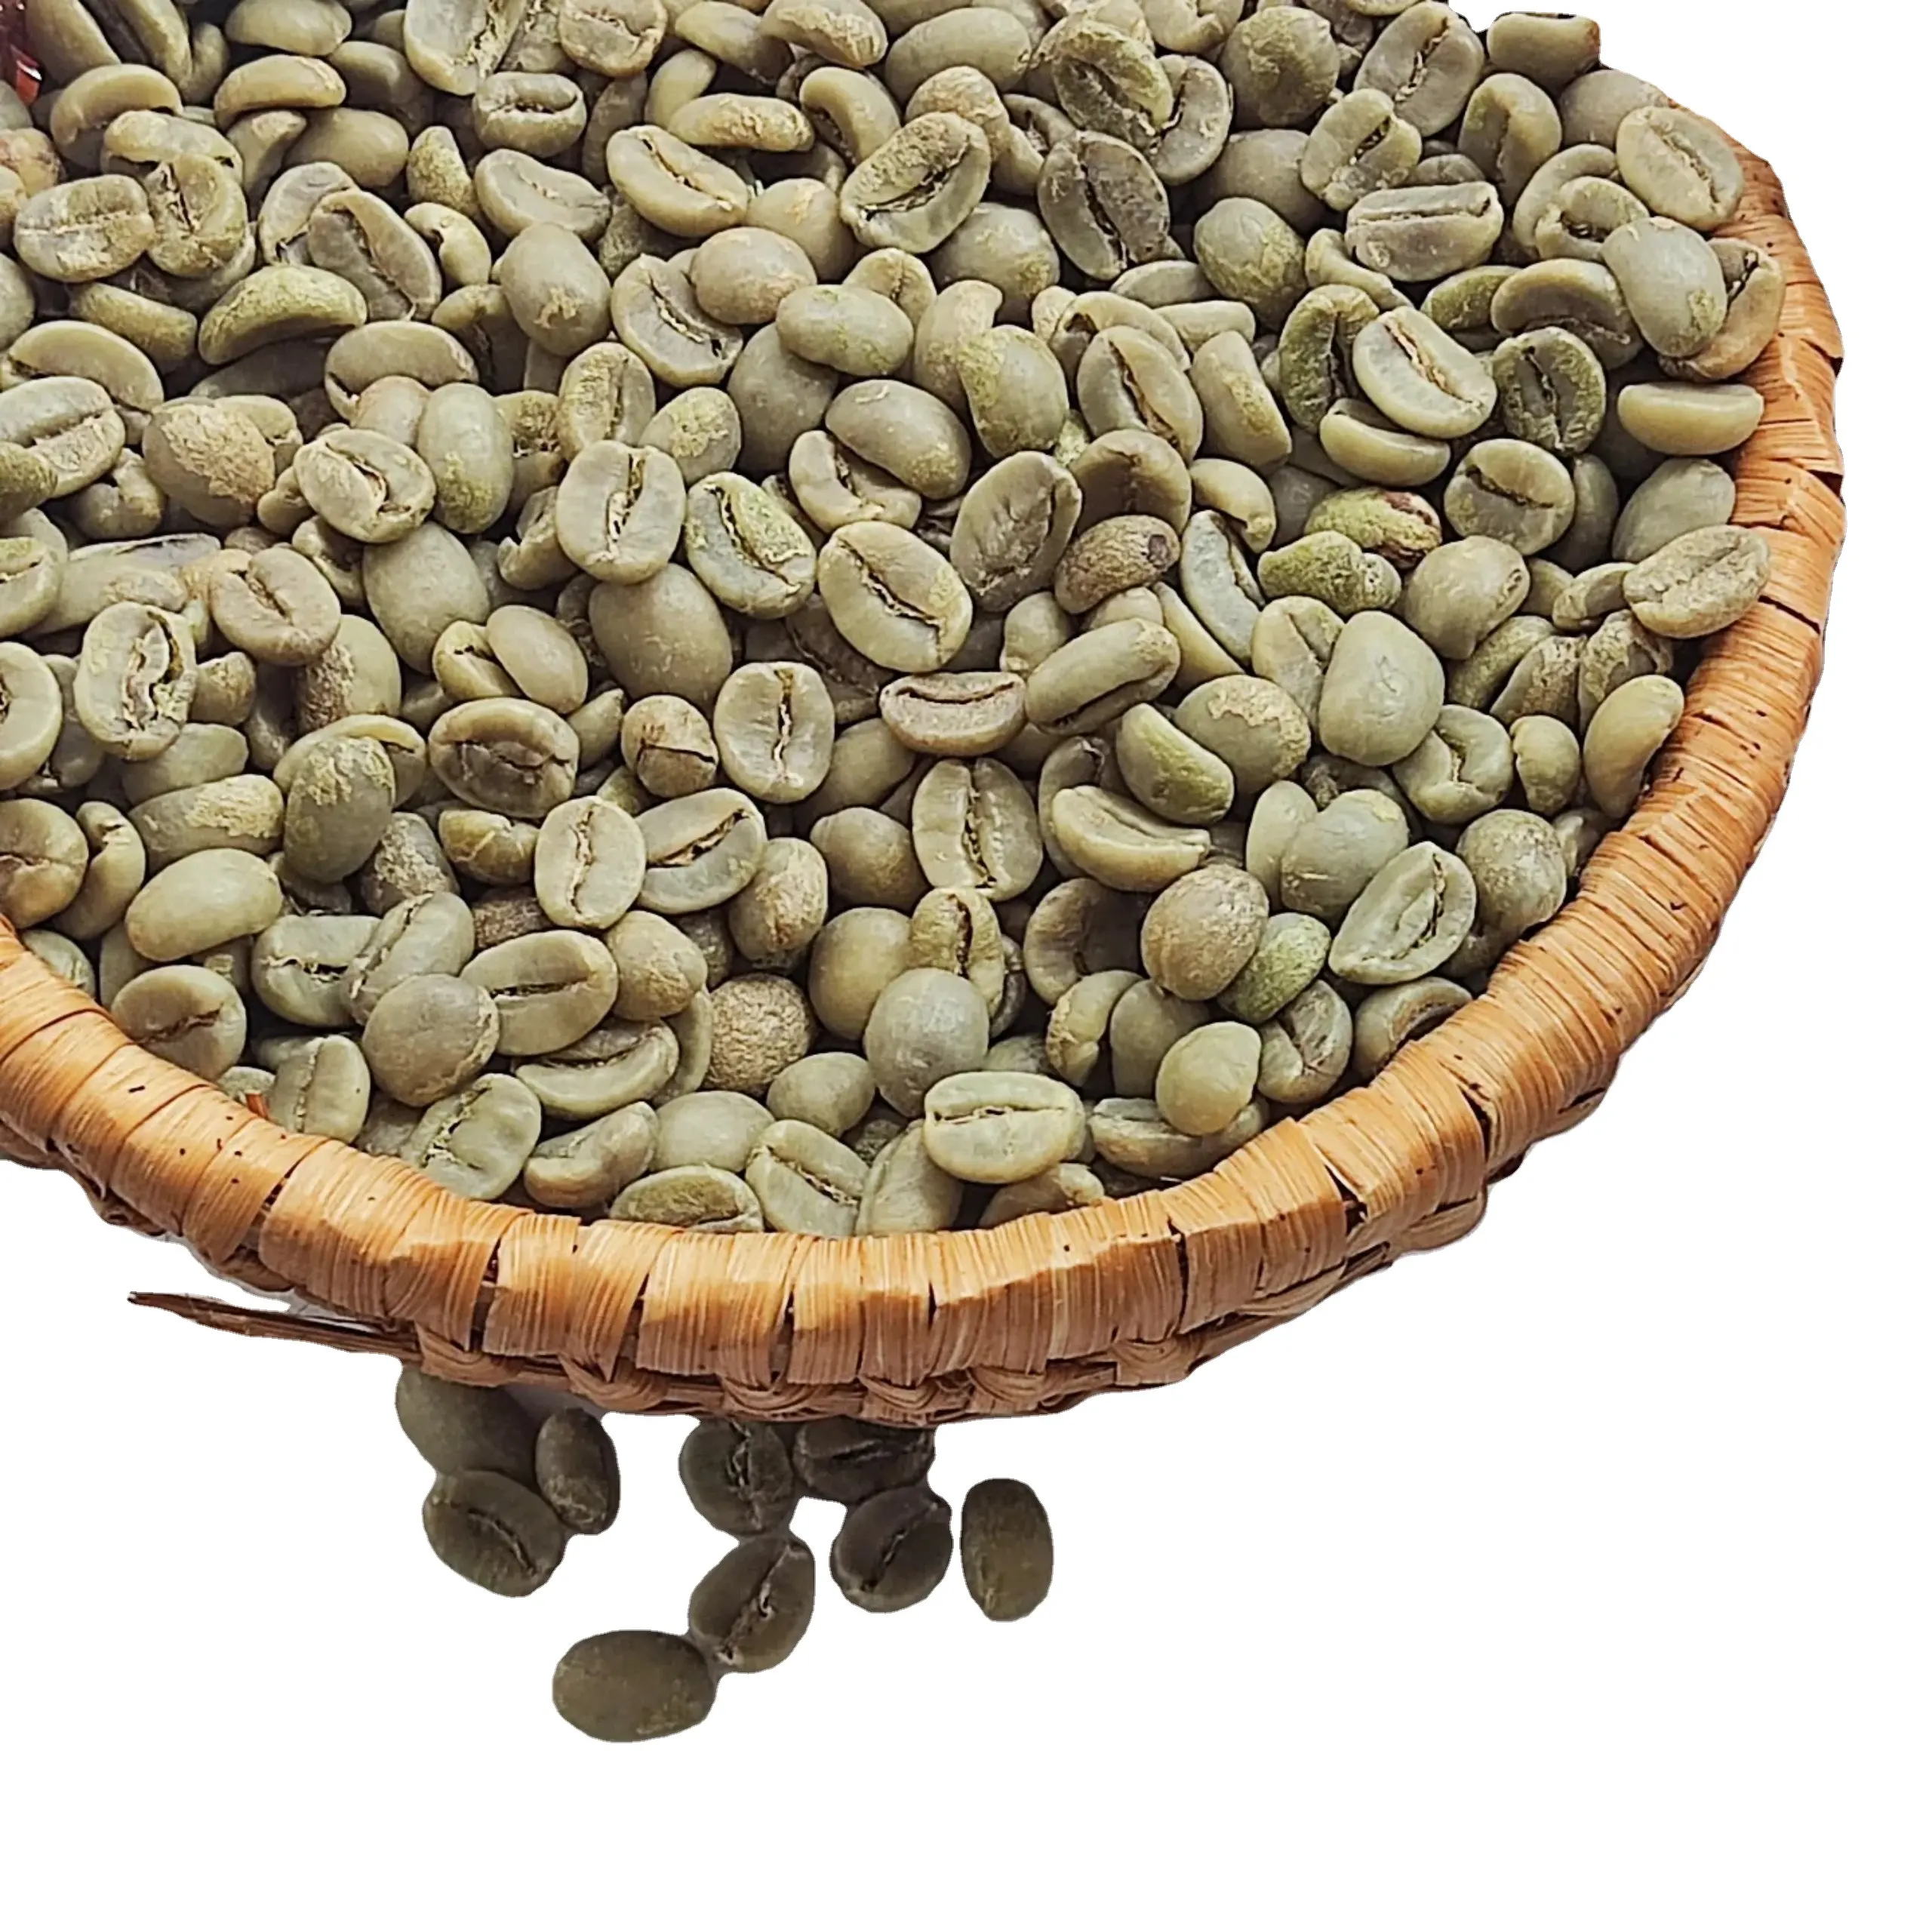 100% chicchi di caffè verde ARABICA originali del VIETNAM alla rinfusa con processo pulito/bagnato lucido ERIC PHAN + 84931615449